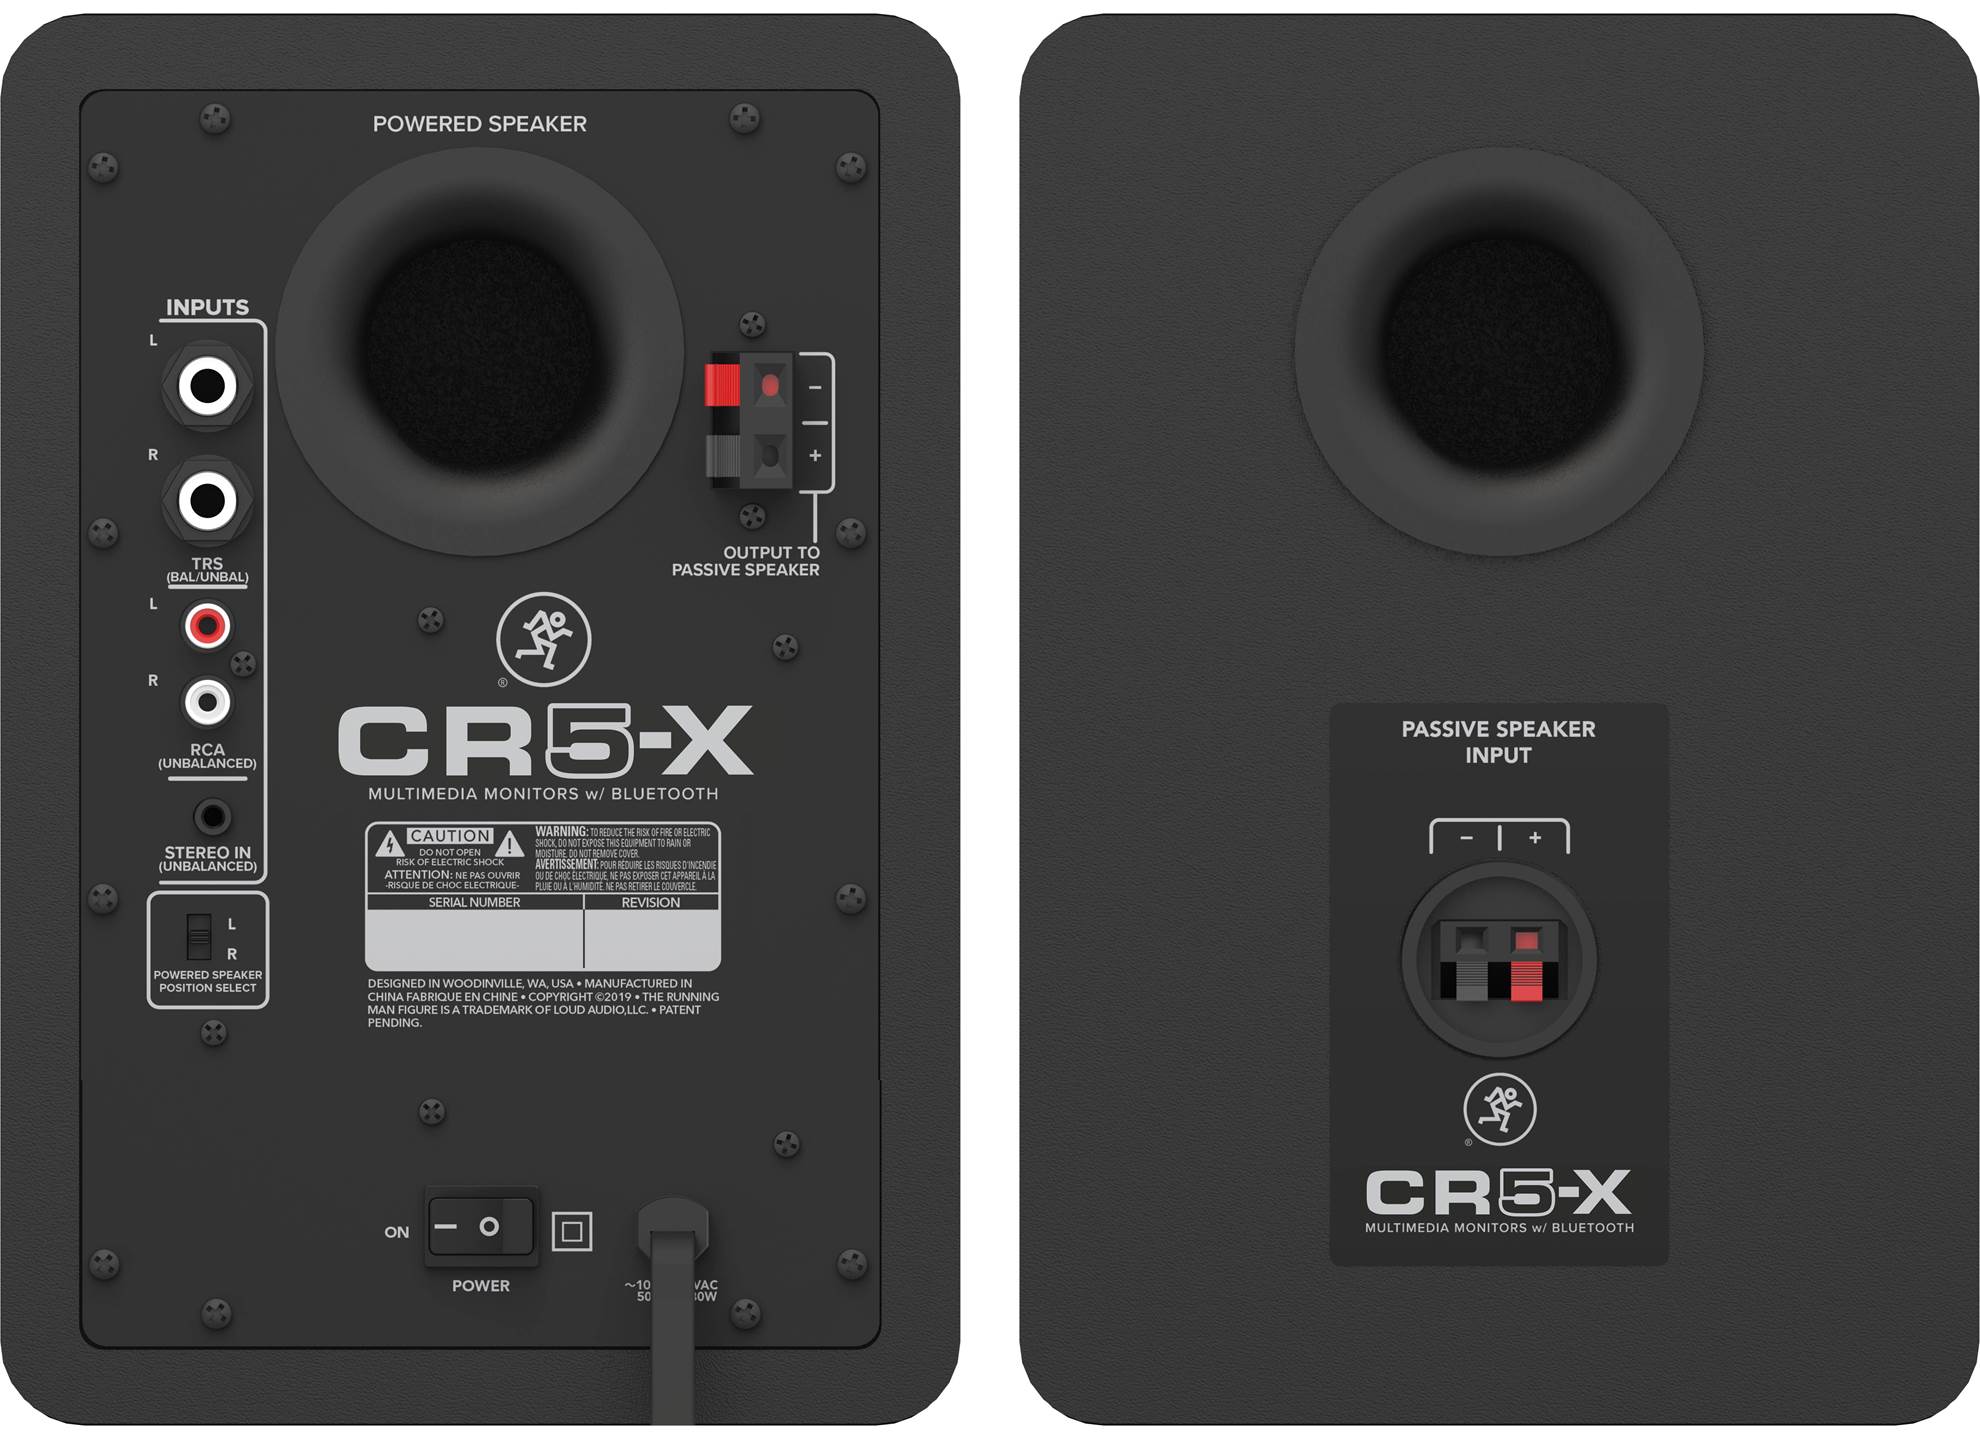 CR5-X